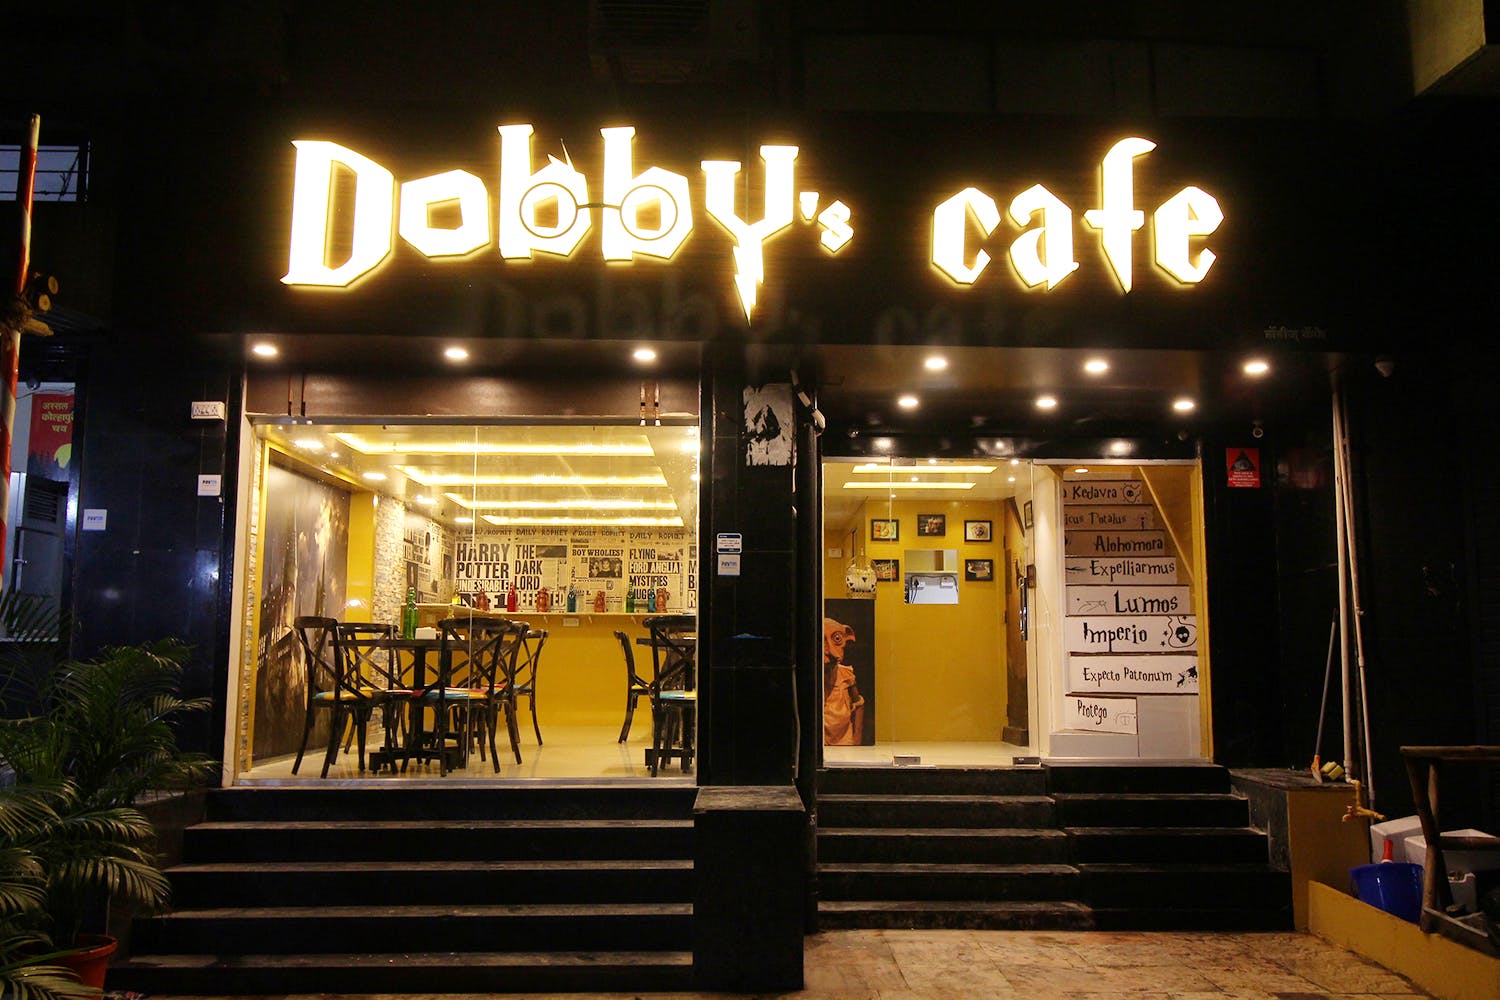 Harry-Potter-Themed Dobby's Cafe, Sinhagad Road